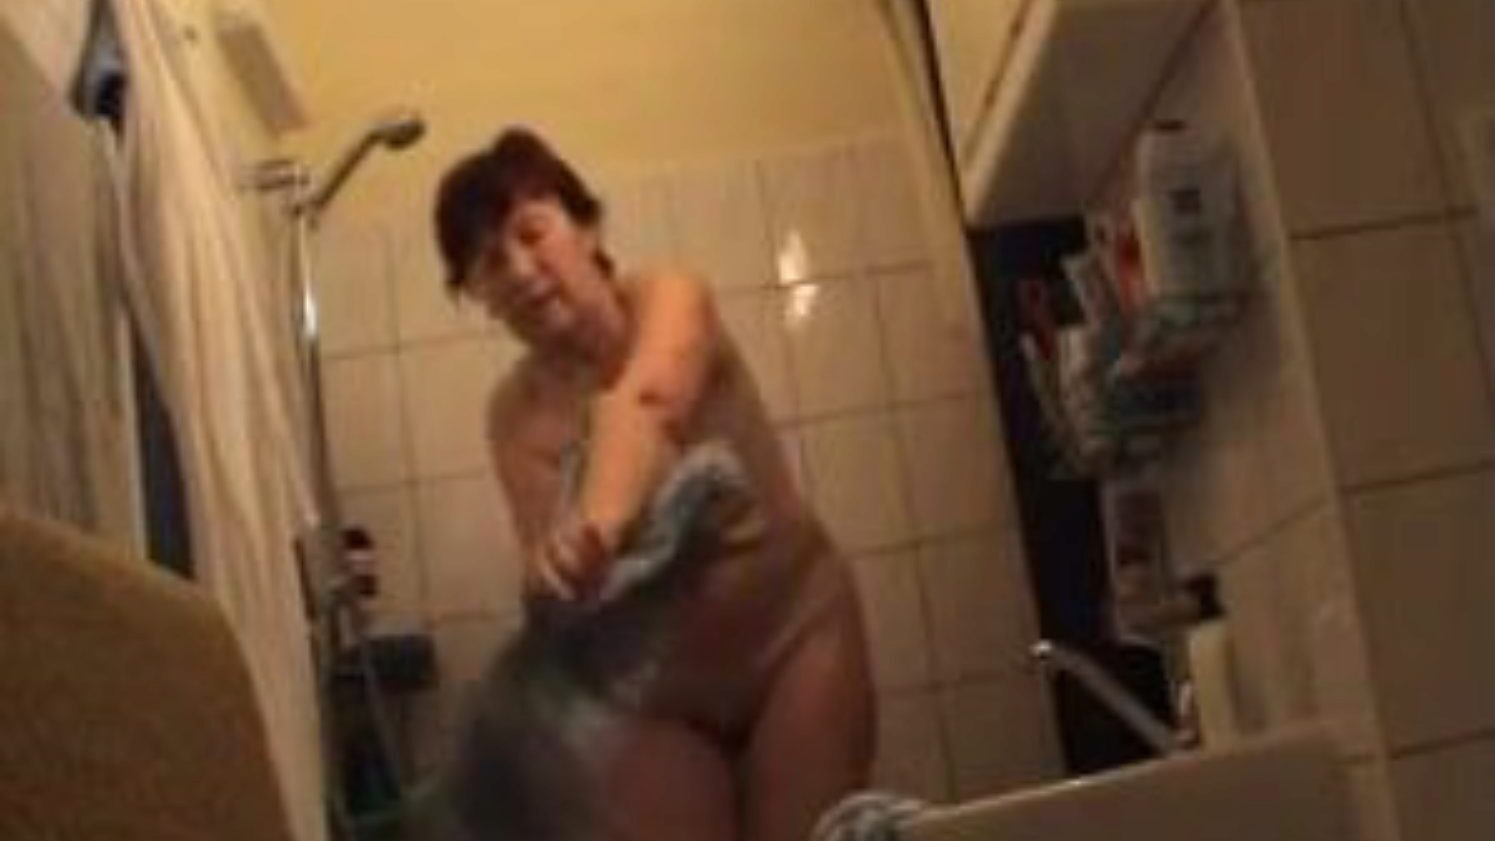 abuela alemana desnuda en el baño, anuncio de video porno de alemanes gratis ver escena de película de abuela alemana desnuda en el baño en xhamster, el sitio de sexo más grande con toneladas de abuelas desnudas de alemanes gratis y videos porno maduros